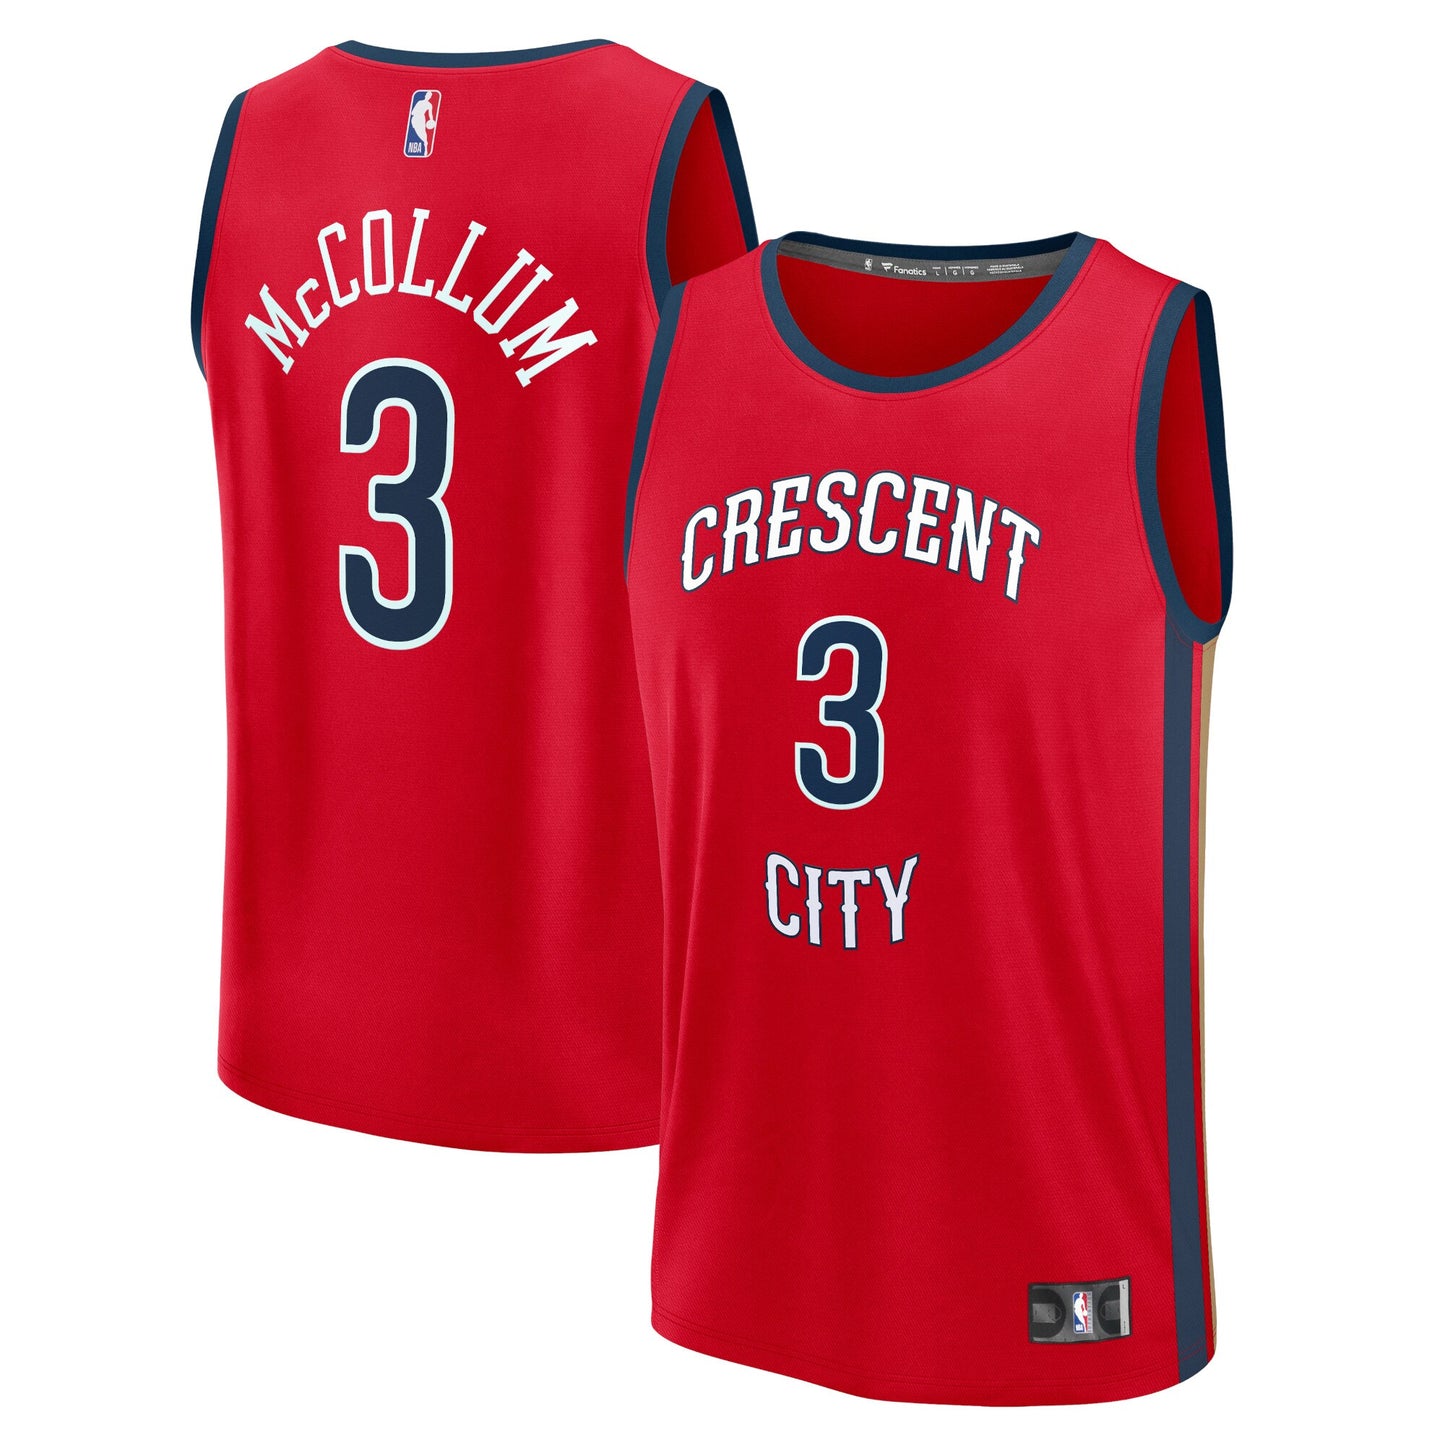 CJ McCollum New Orleans Pelicans Fanatics Branded Fast Break Replica Jersey - Statement Edition - Red